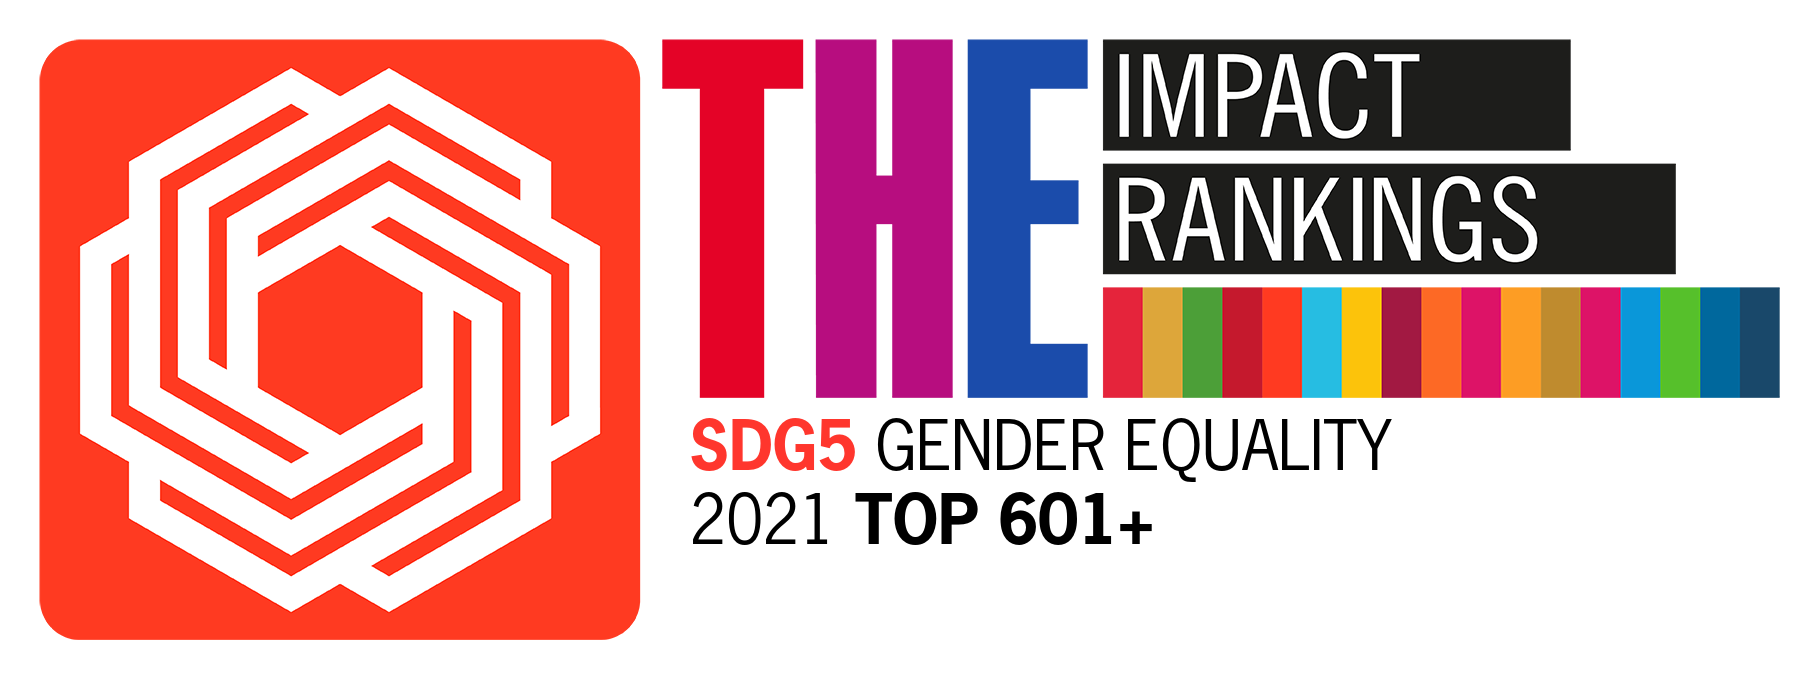 SDG5_ Gender Equality - Top 601+